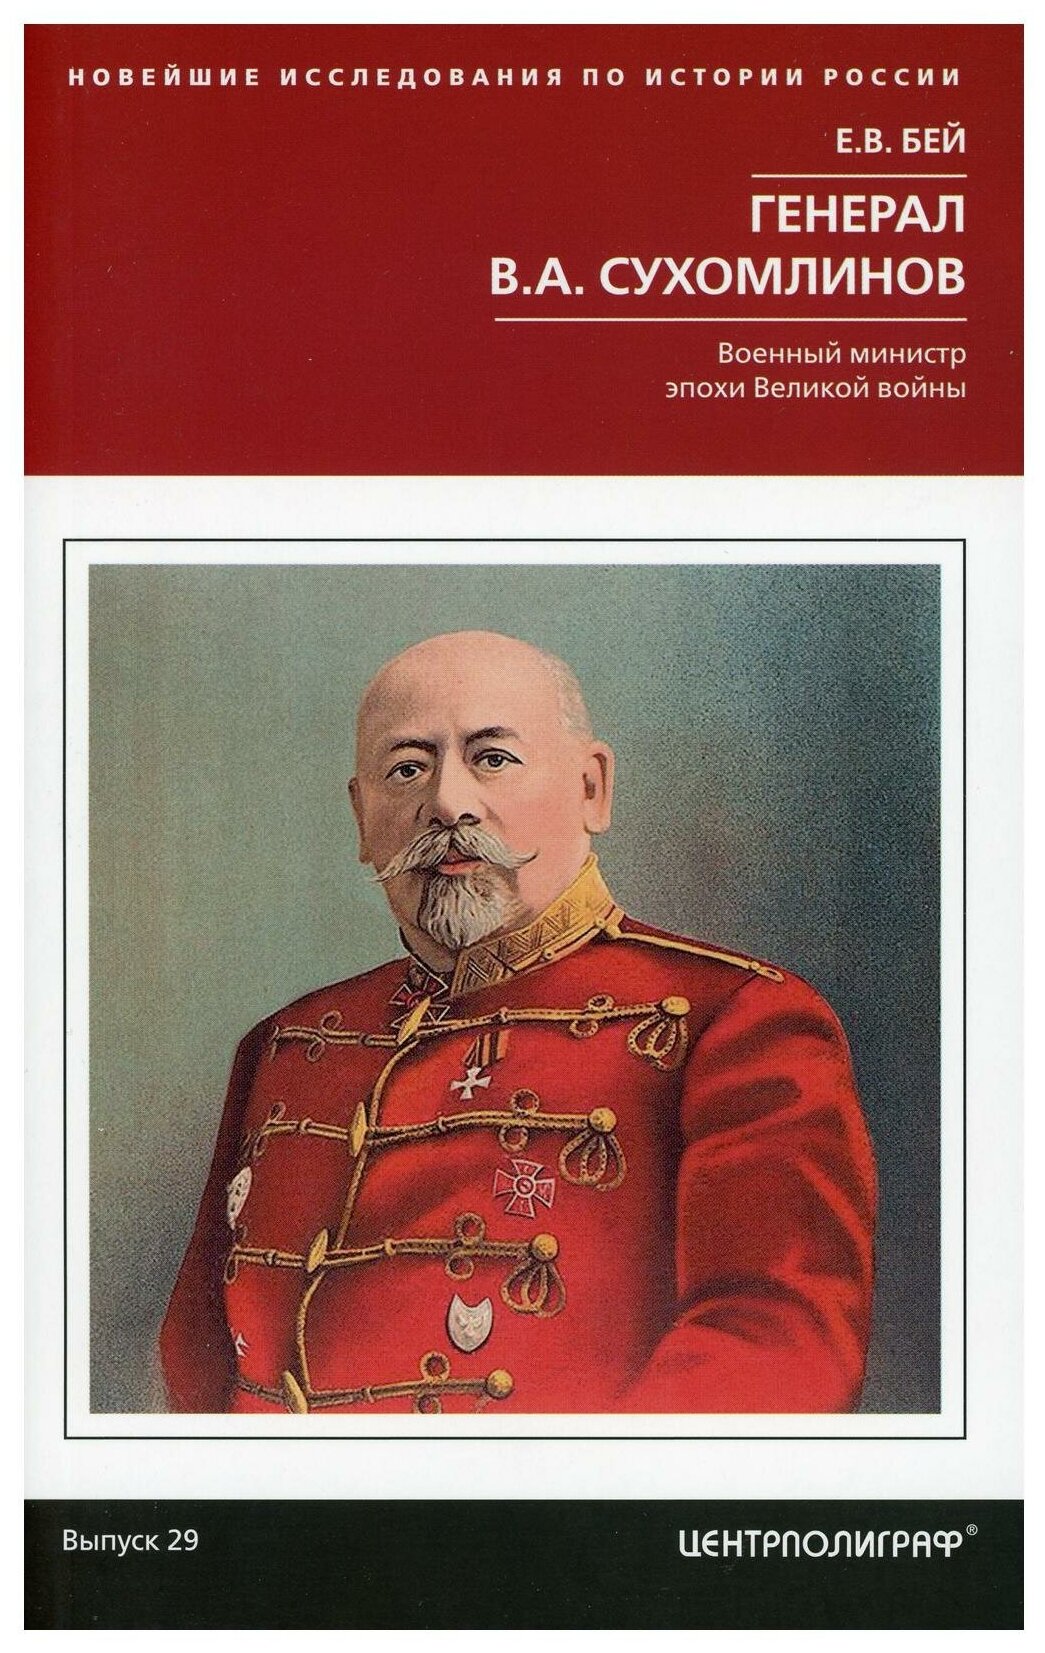 Генерал В.А. Сухомлинов. Военный министр эпохи Великой войны - фото №1